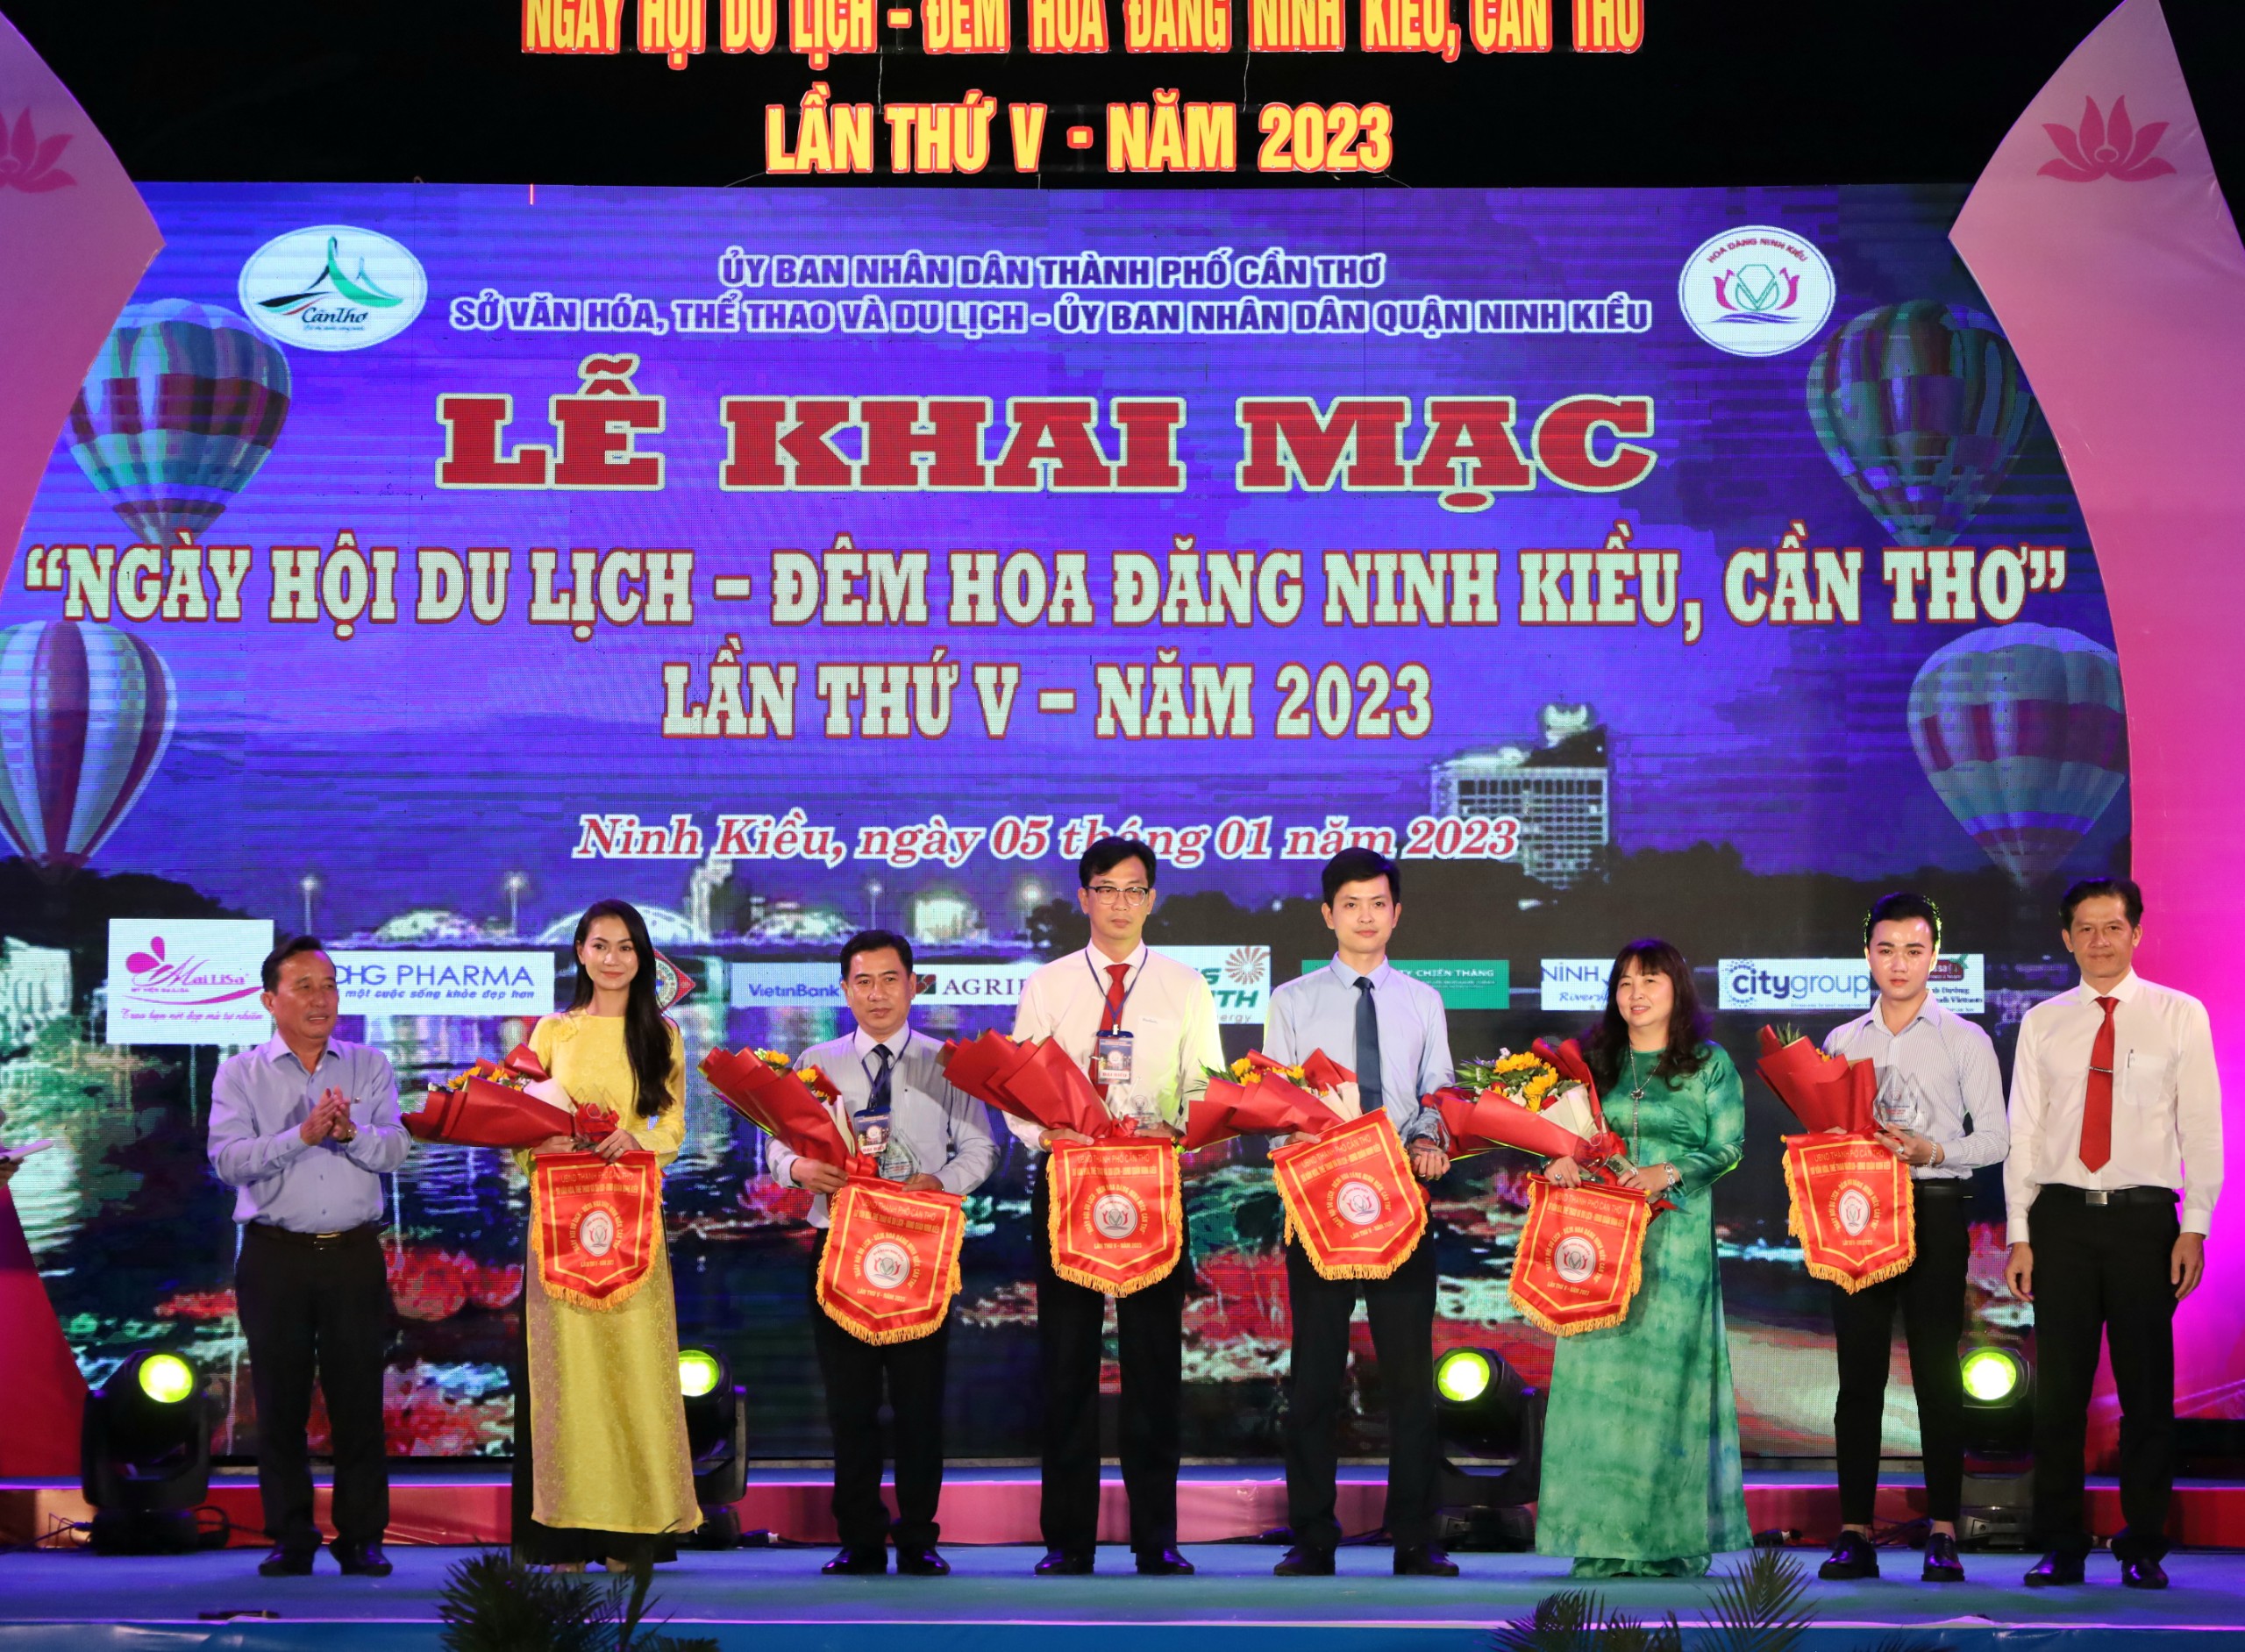 Ông Nguyễn Tiền Phong - UVBTV Thành ủy, Bí thư Quận ủy Ninh Kiều và ông Huỳnh Trung Trứ - Chủ tịch UBND quận Ninh Kiều trao cờ lưu niệm và hoa cho các đơn vị tài trợ tổ chức ngày hội.